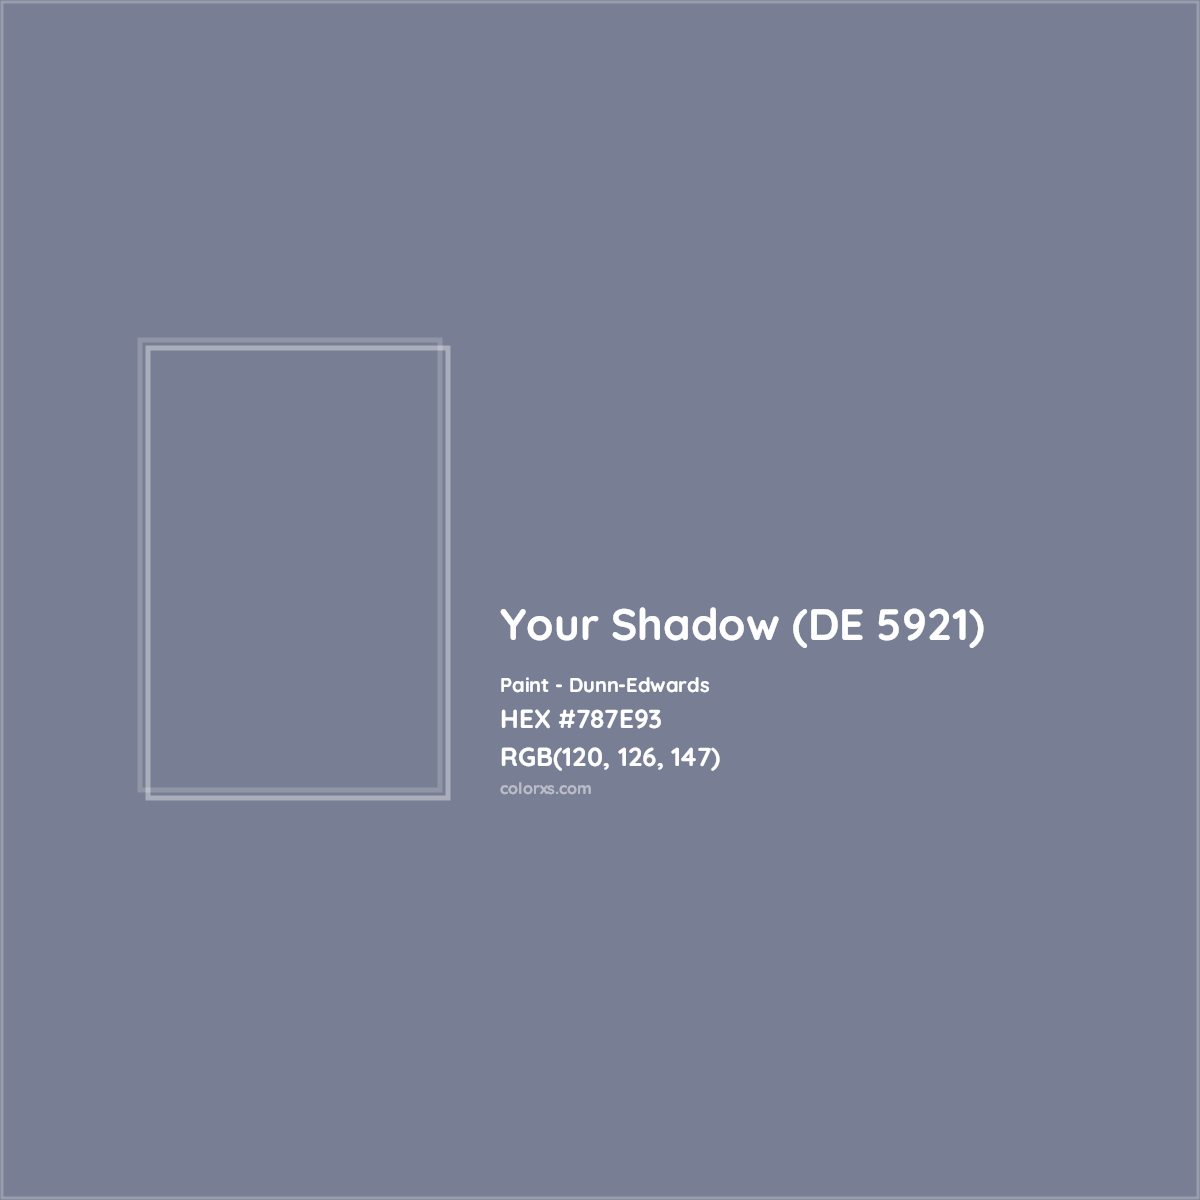 HEX #787E93 Your Shadow (DE 5921) Paint Dunn-Edwards - Color Code